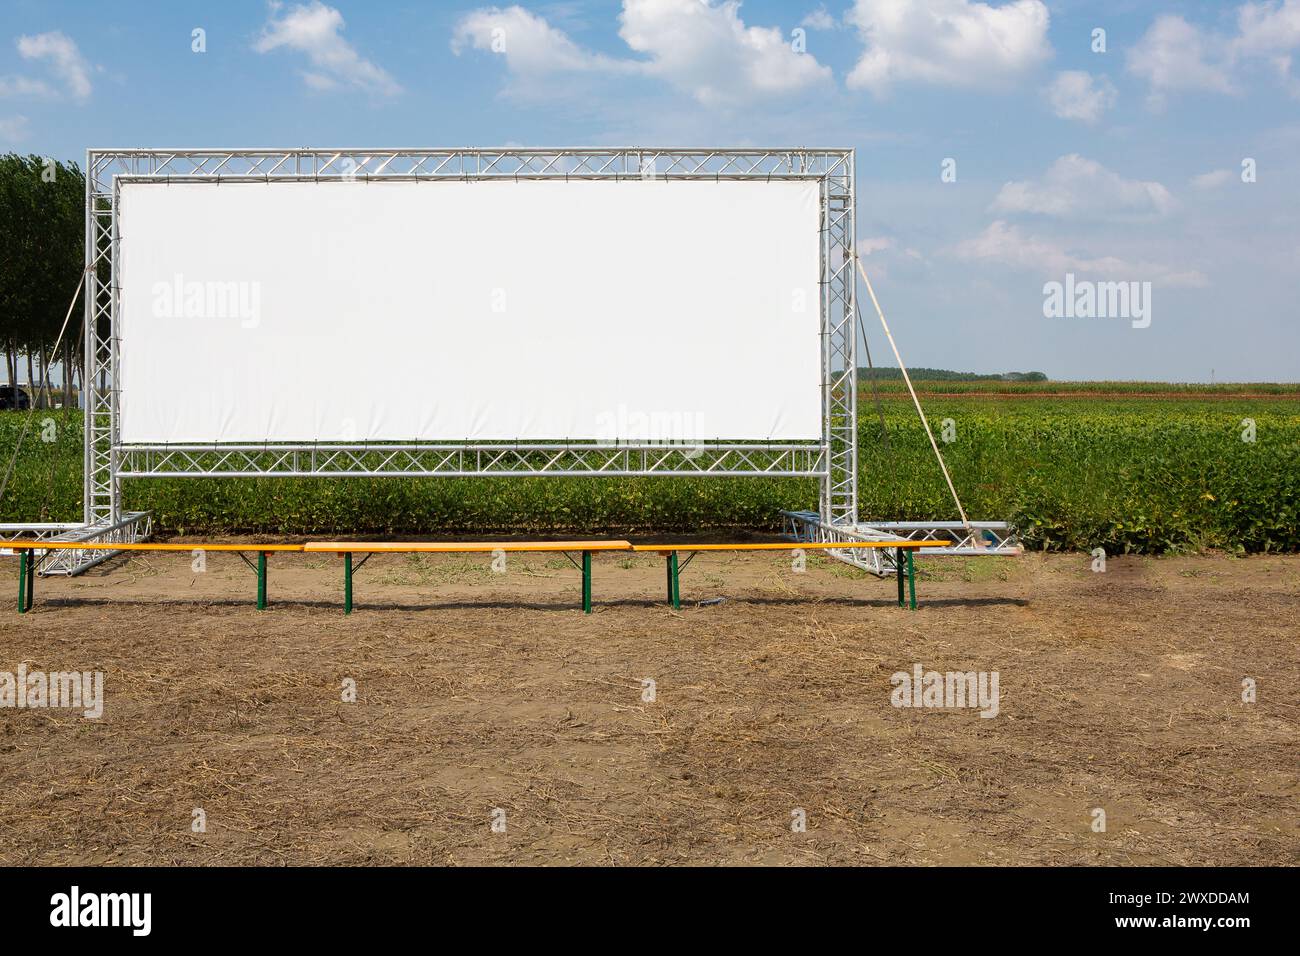 Uno schermo cinematografico ampio e vuoto si trova in primo piano in un ambiente rurale, offrendo uno spazio pubblicitario ideale per gli esperti di marketing Foto Stock